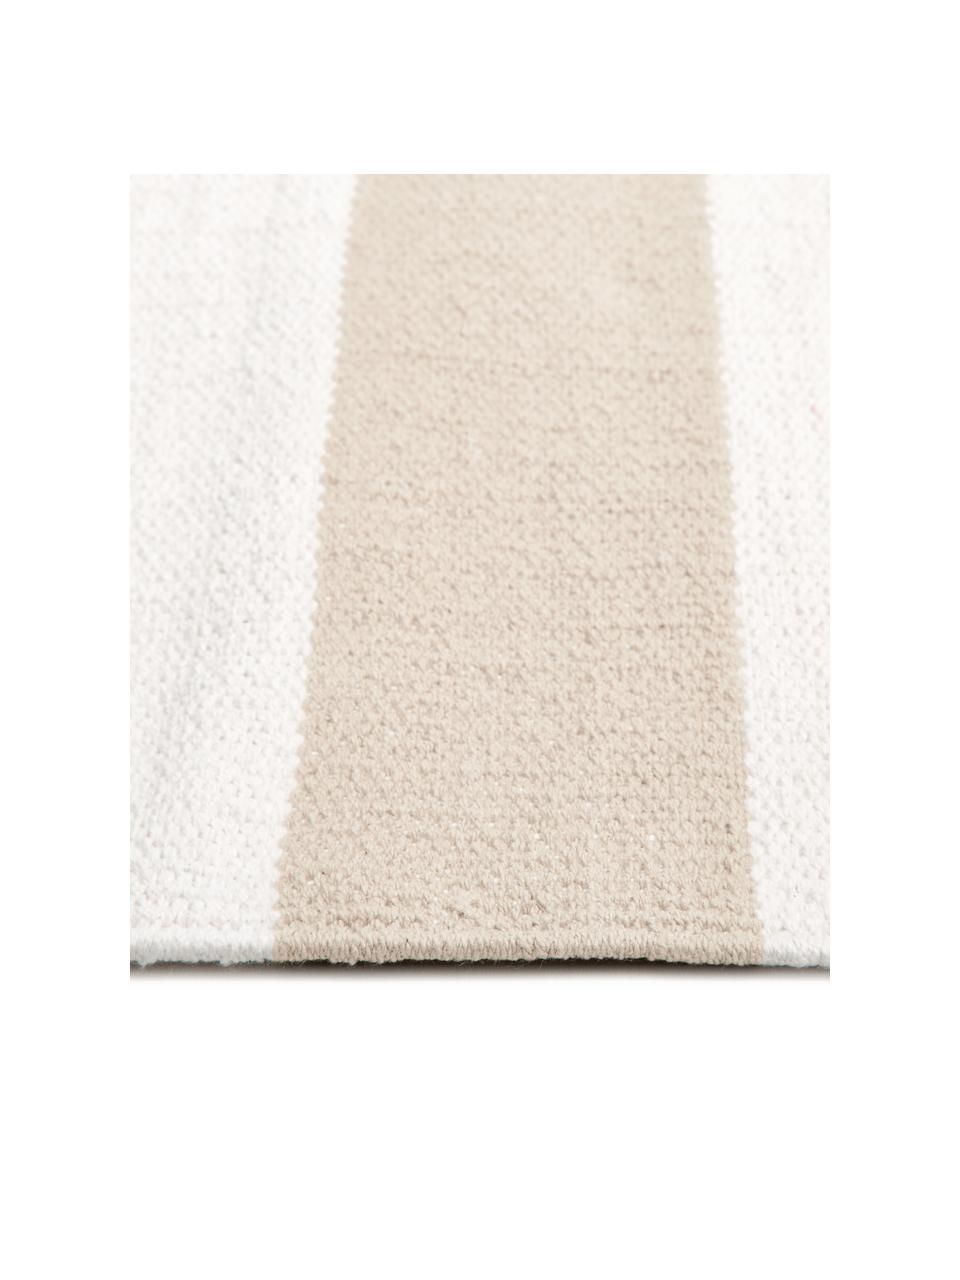 Tappeto in cotone a righe tessuto a mano Blocker, 100% cotone, Bianco crema/beige, Larg. 200 x Lung. 300 cm (taglia L)